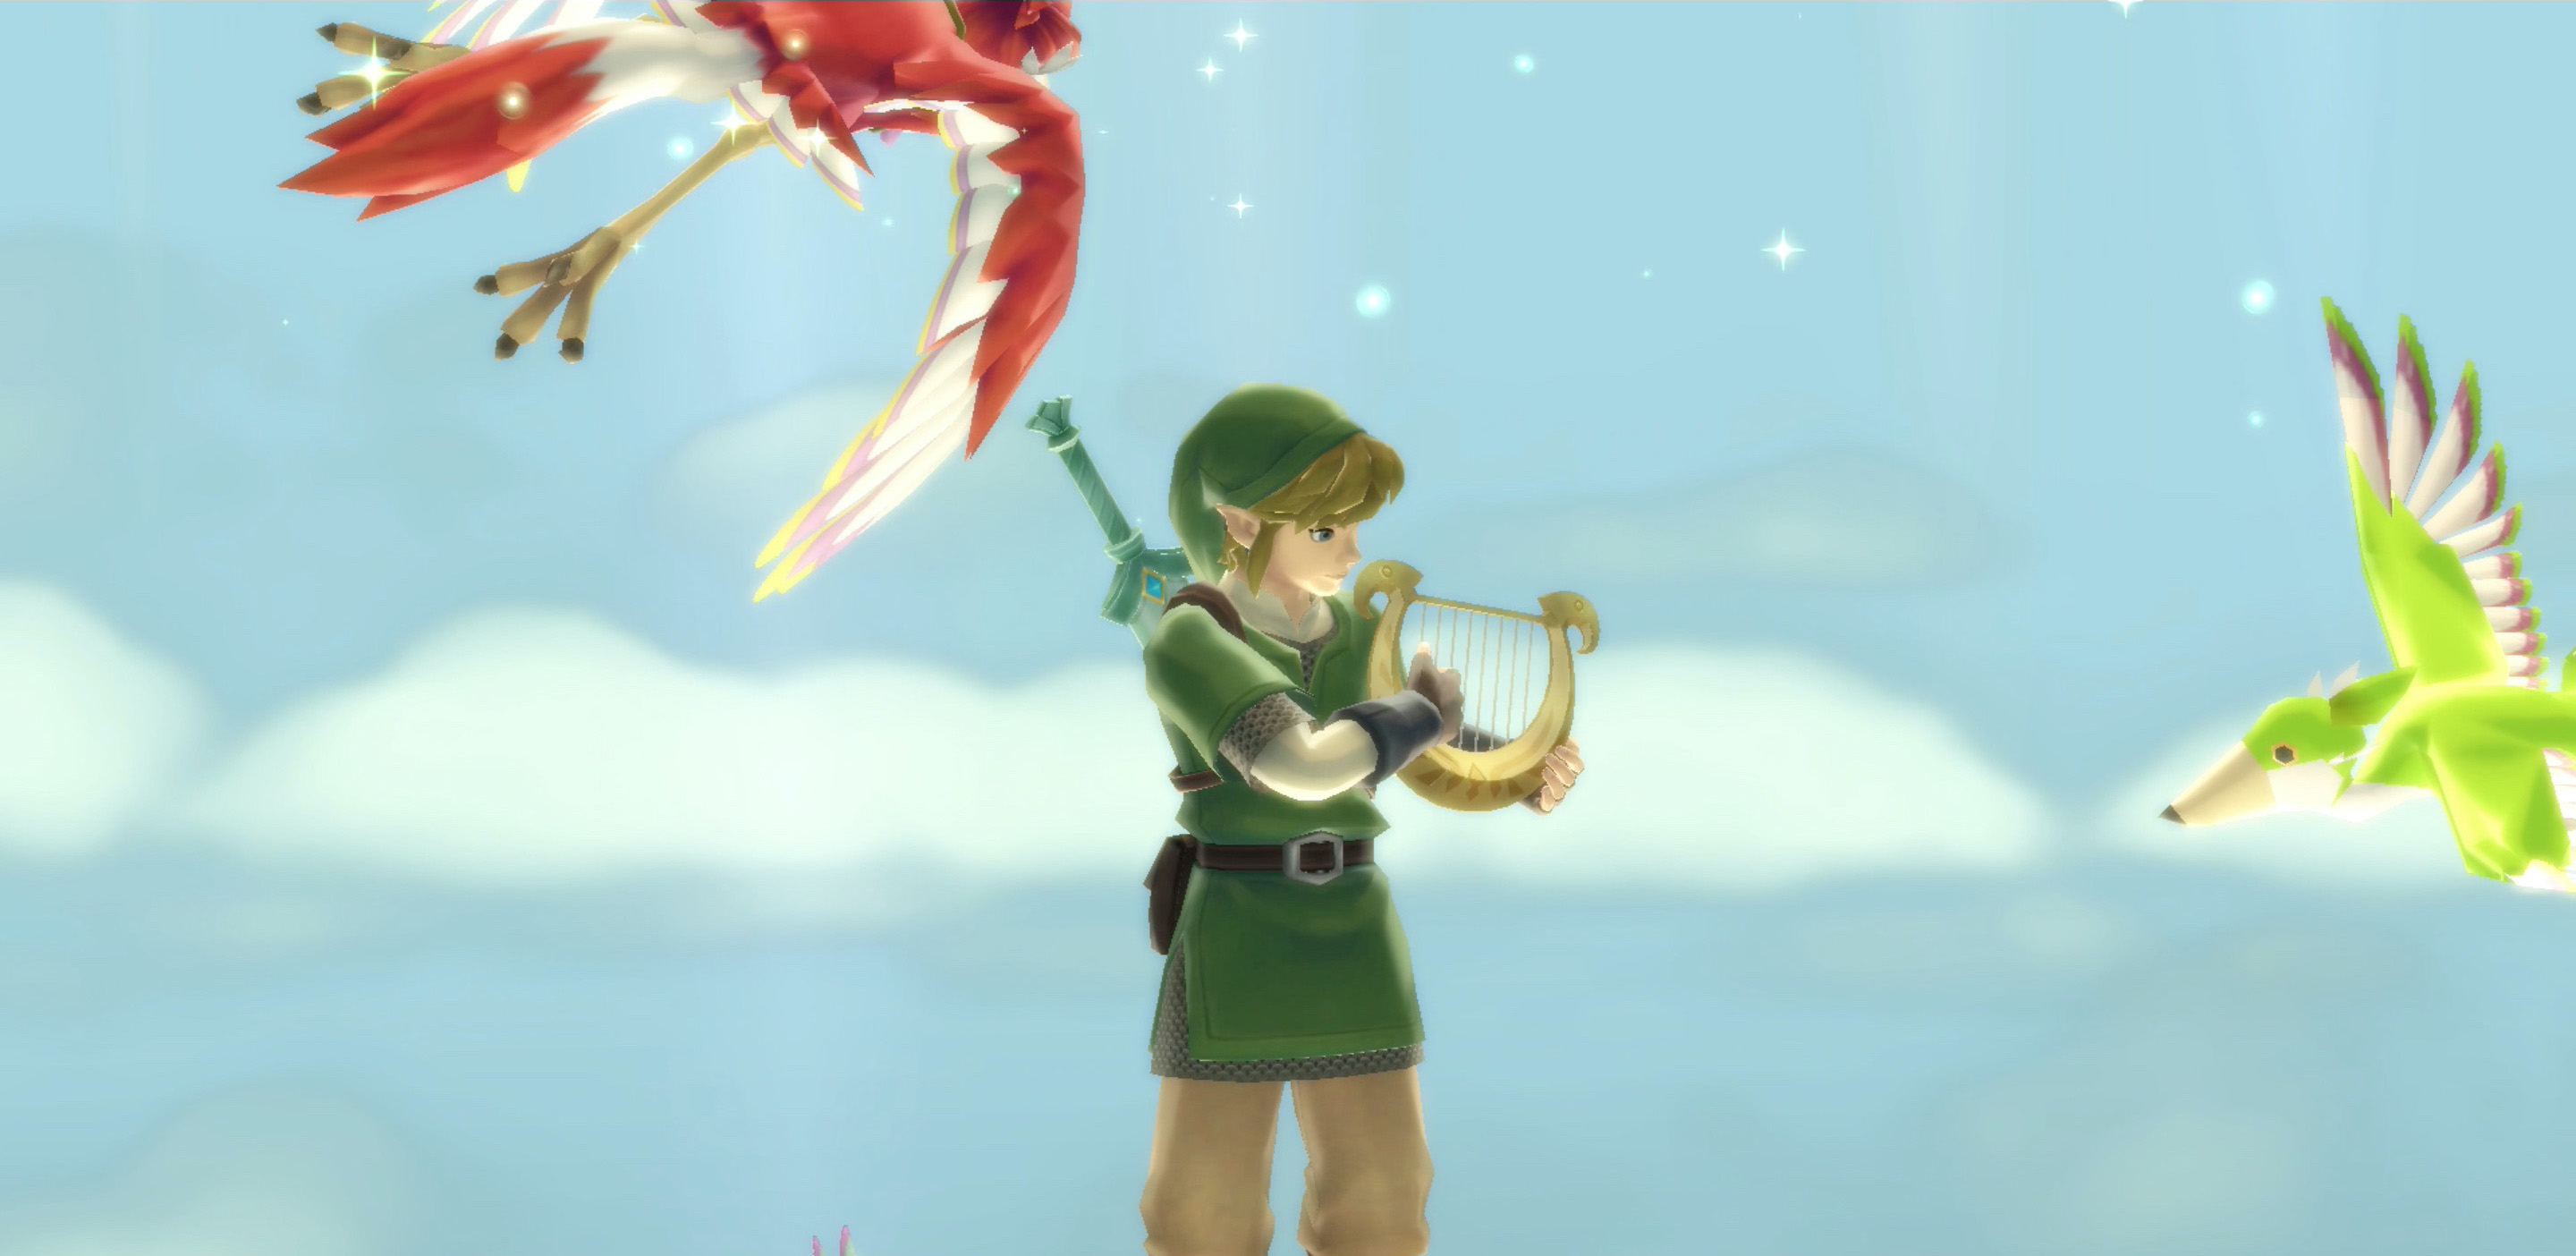 Isle of Songs walkthrough – Zelda: Skyward Sword HD guide